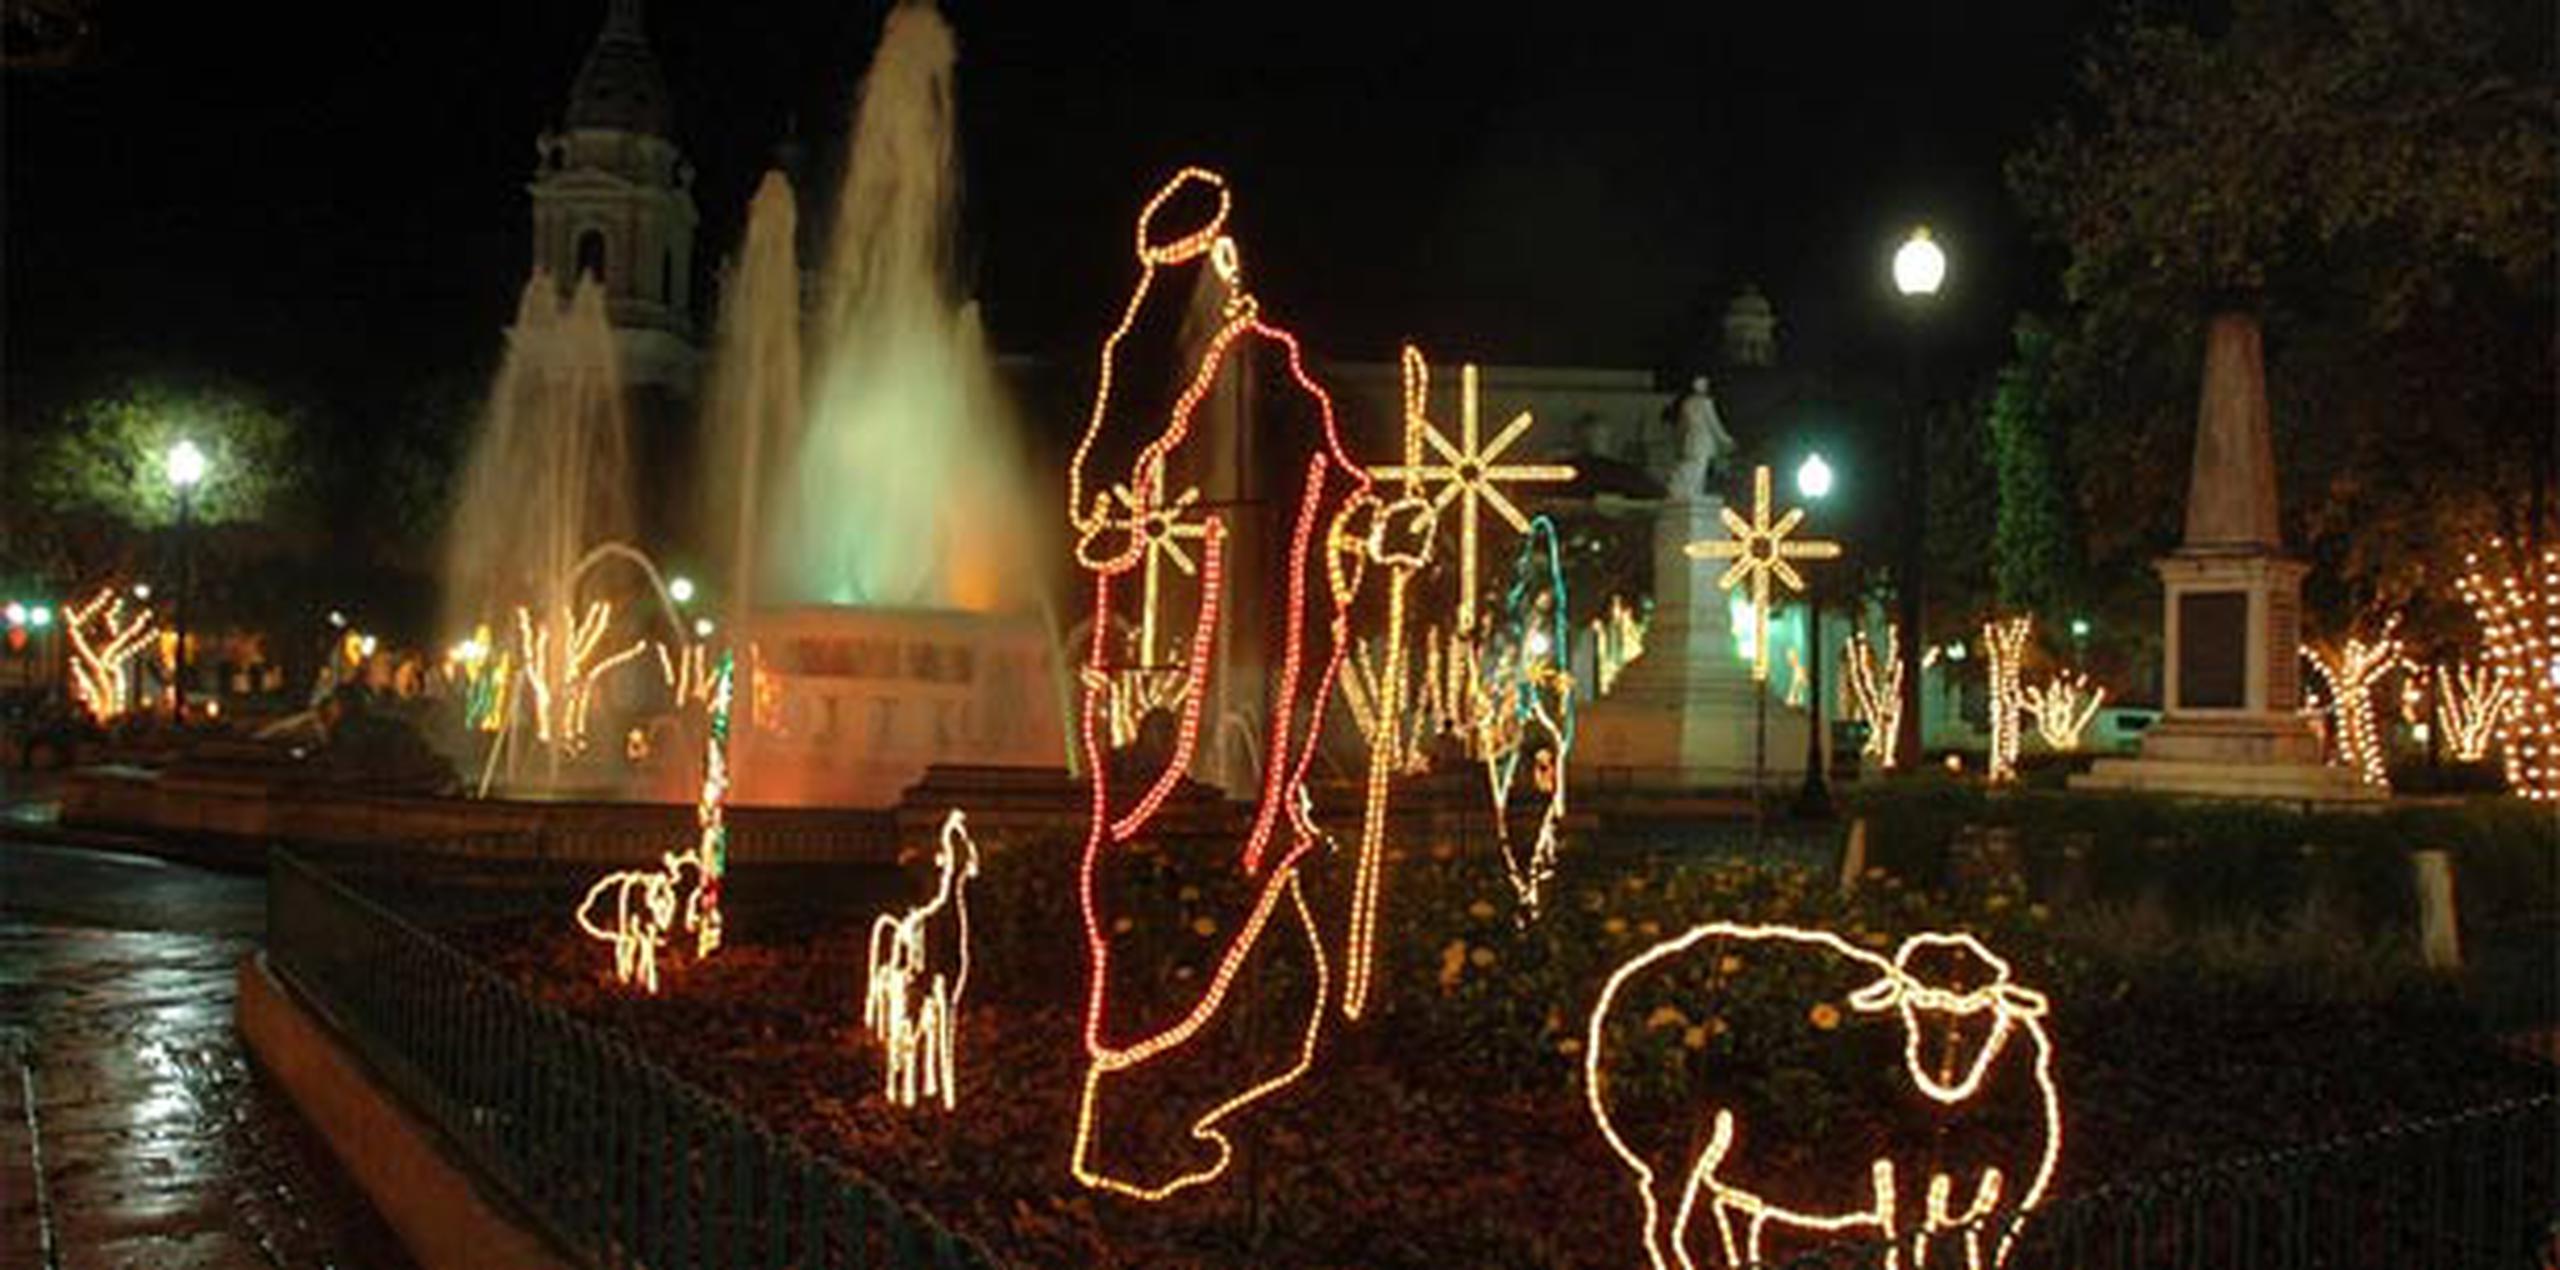 Este viernes 21 de noviembre, la fiesta inicia desde las 7:00 de la noche en la Plaza Las Delicias de Ponce. (Archivo)